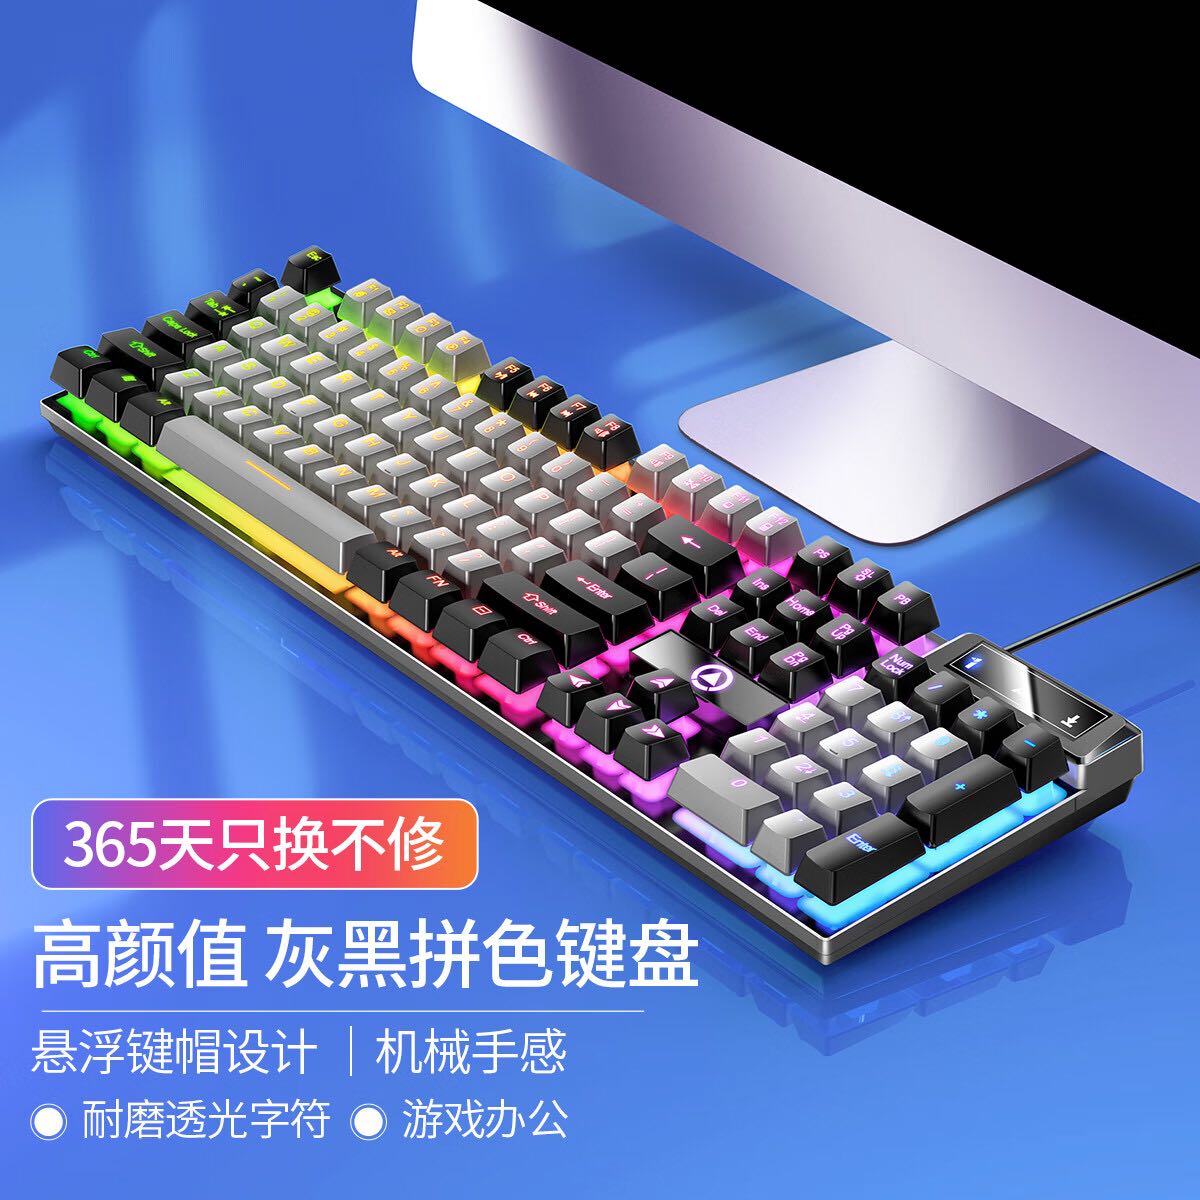 YINDIAO 银雕 电竞游戏键盘机械手感台式笔记本电脑家用办公键鼠套装外 39元